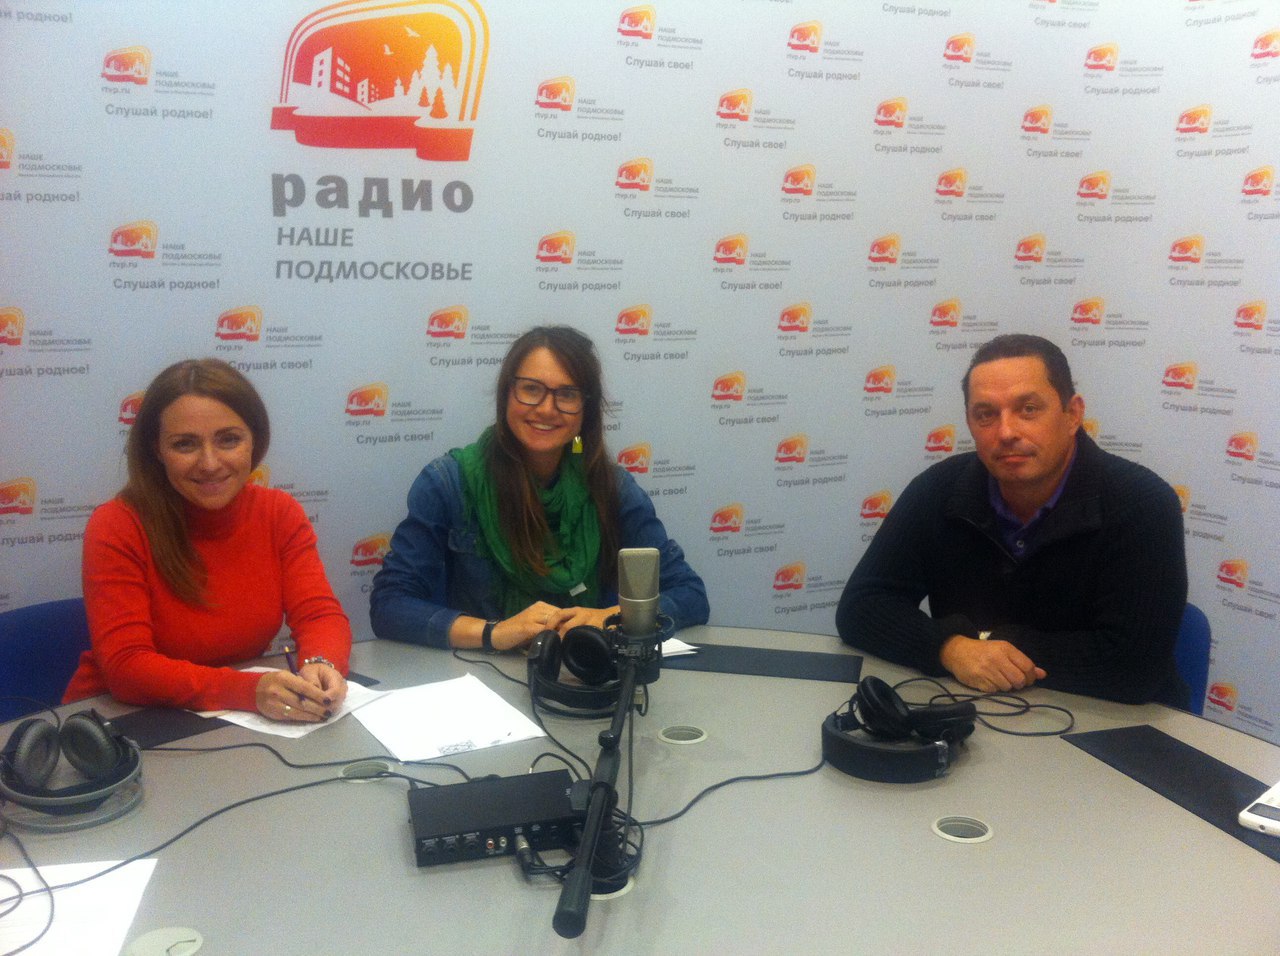 Mr. Yevtushenko talks about Sadko festival on the radio